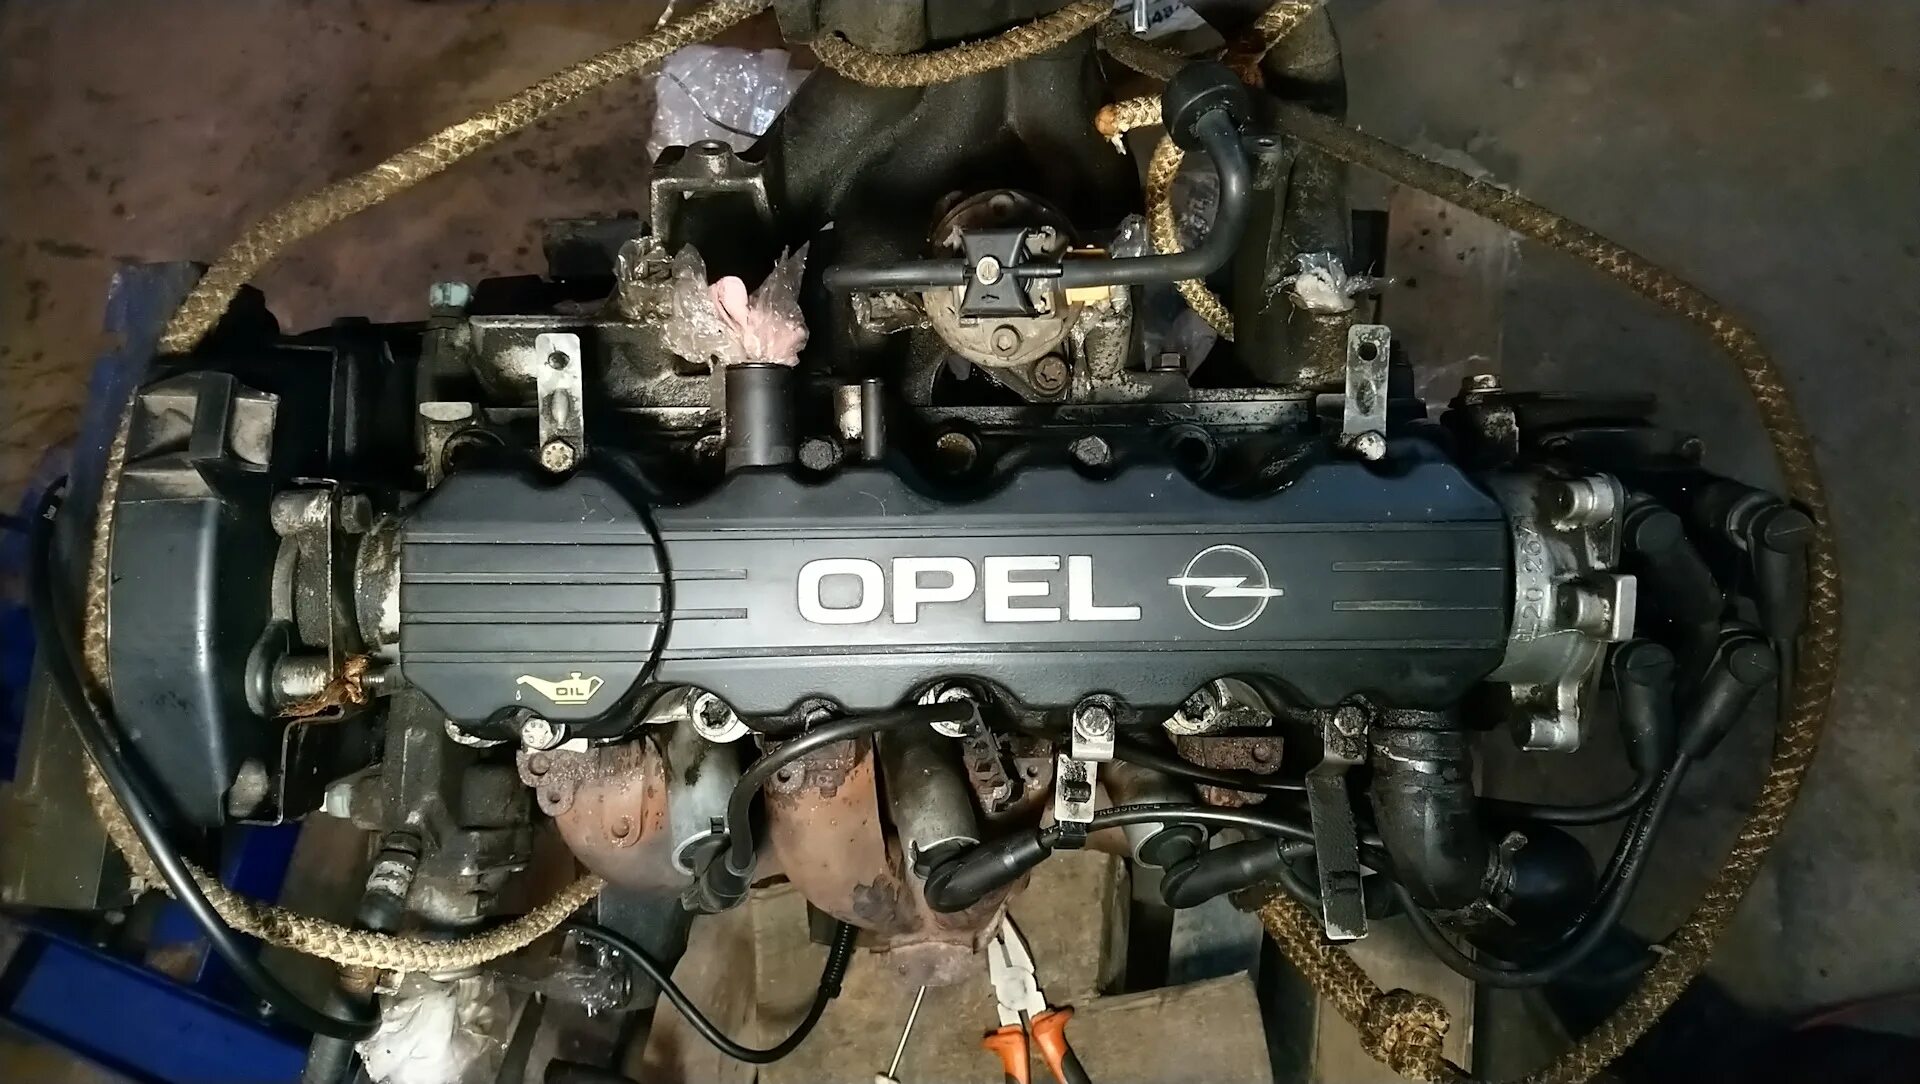 Opel Omega x20se. Опель Омега б 2.0 8 клапанов. Двигатель Опель Омега б 2.0. Opel Omega b x20se. Опель омега б x20se